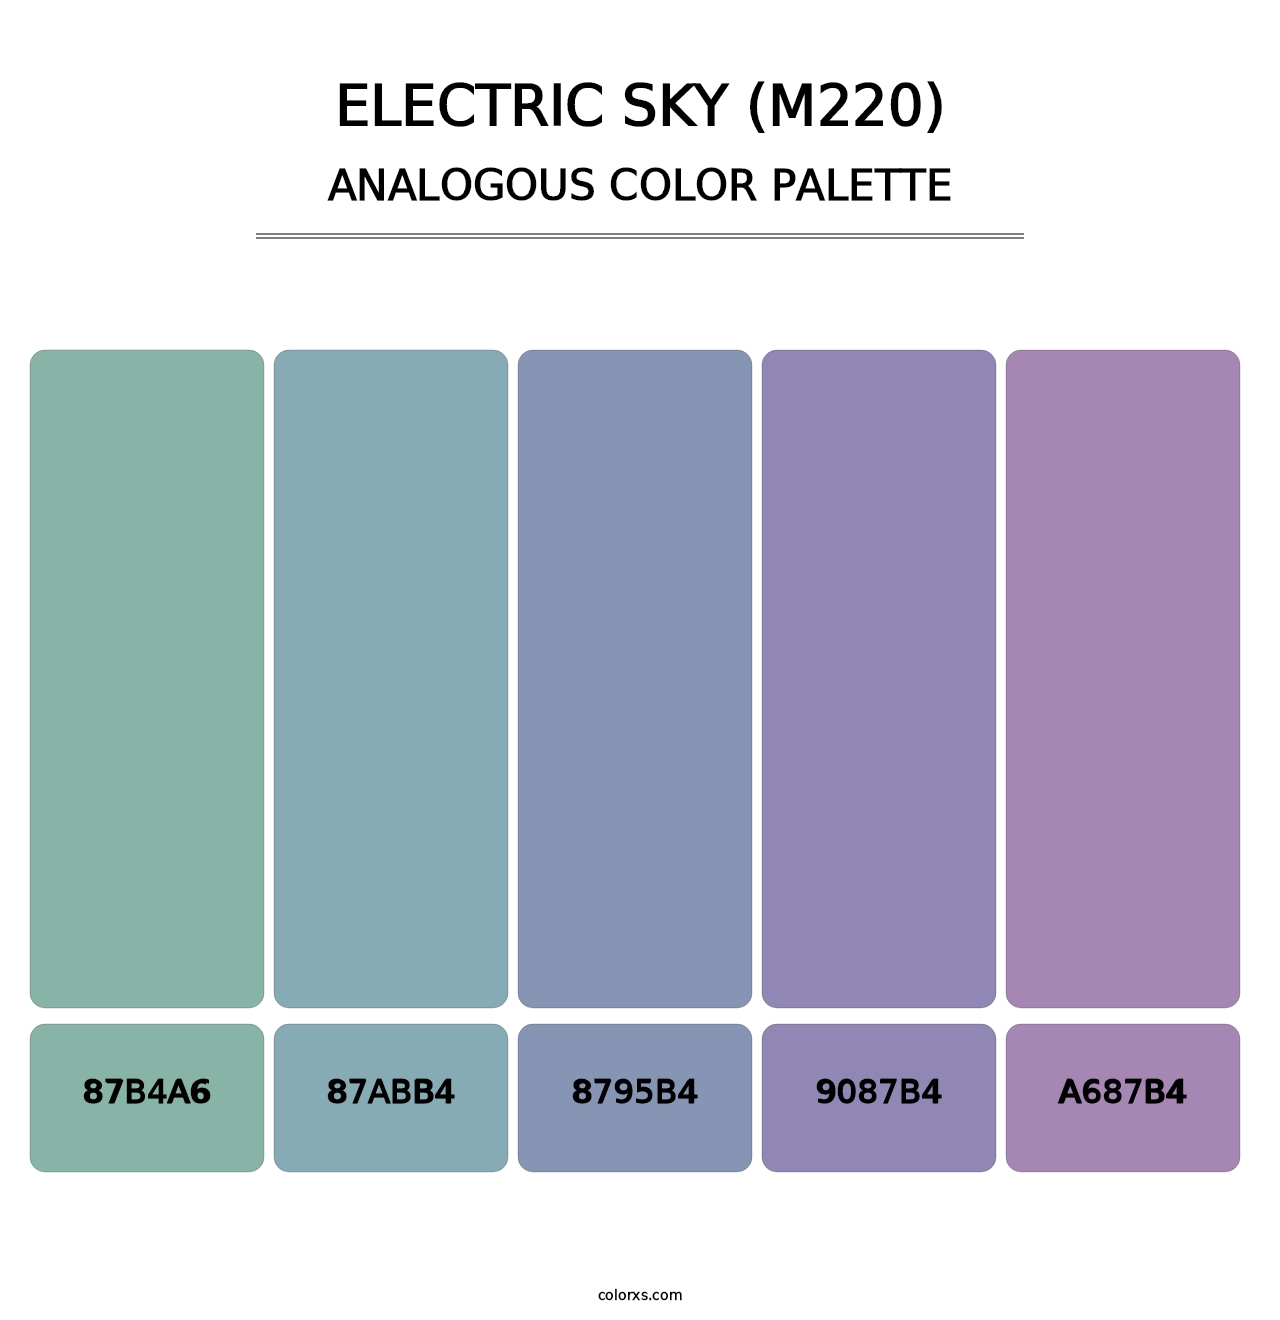 Electric Sky (M220) - Analogous Color Palette